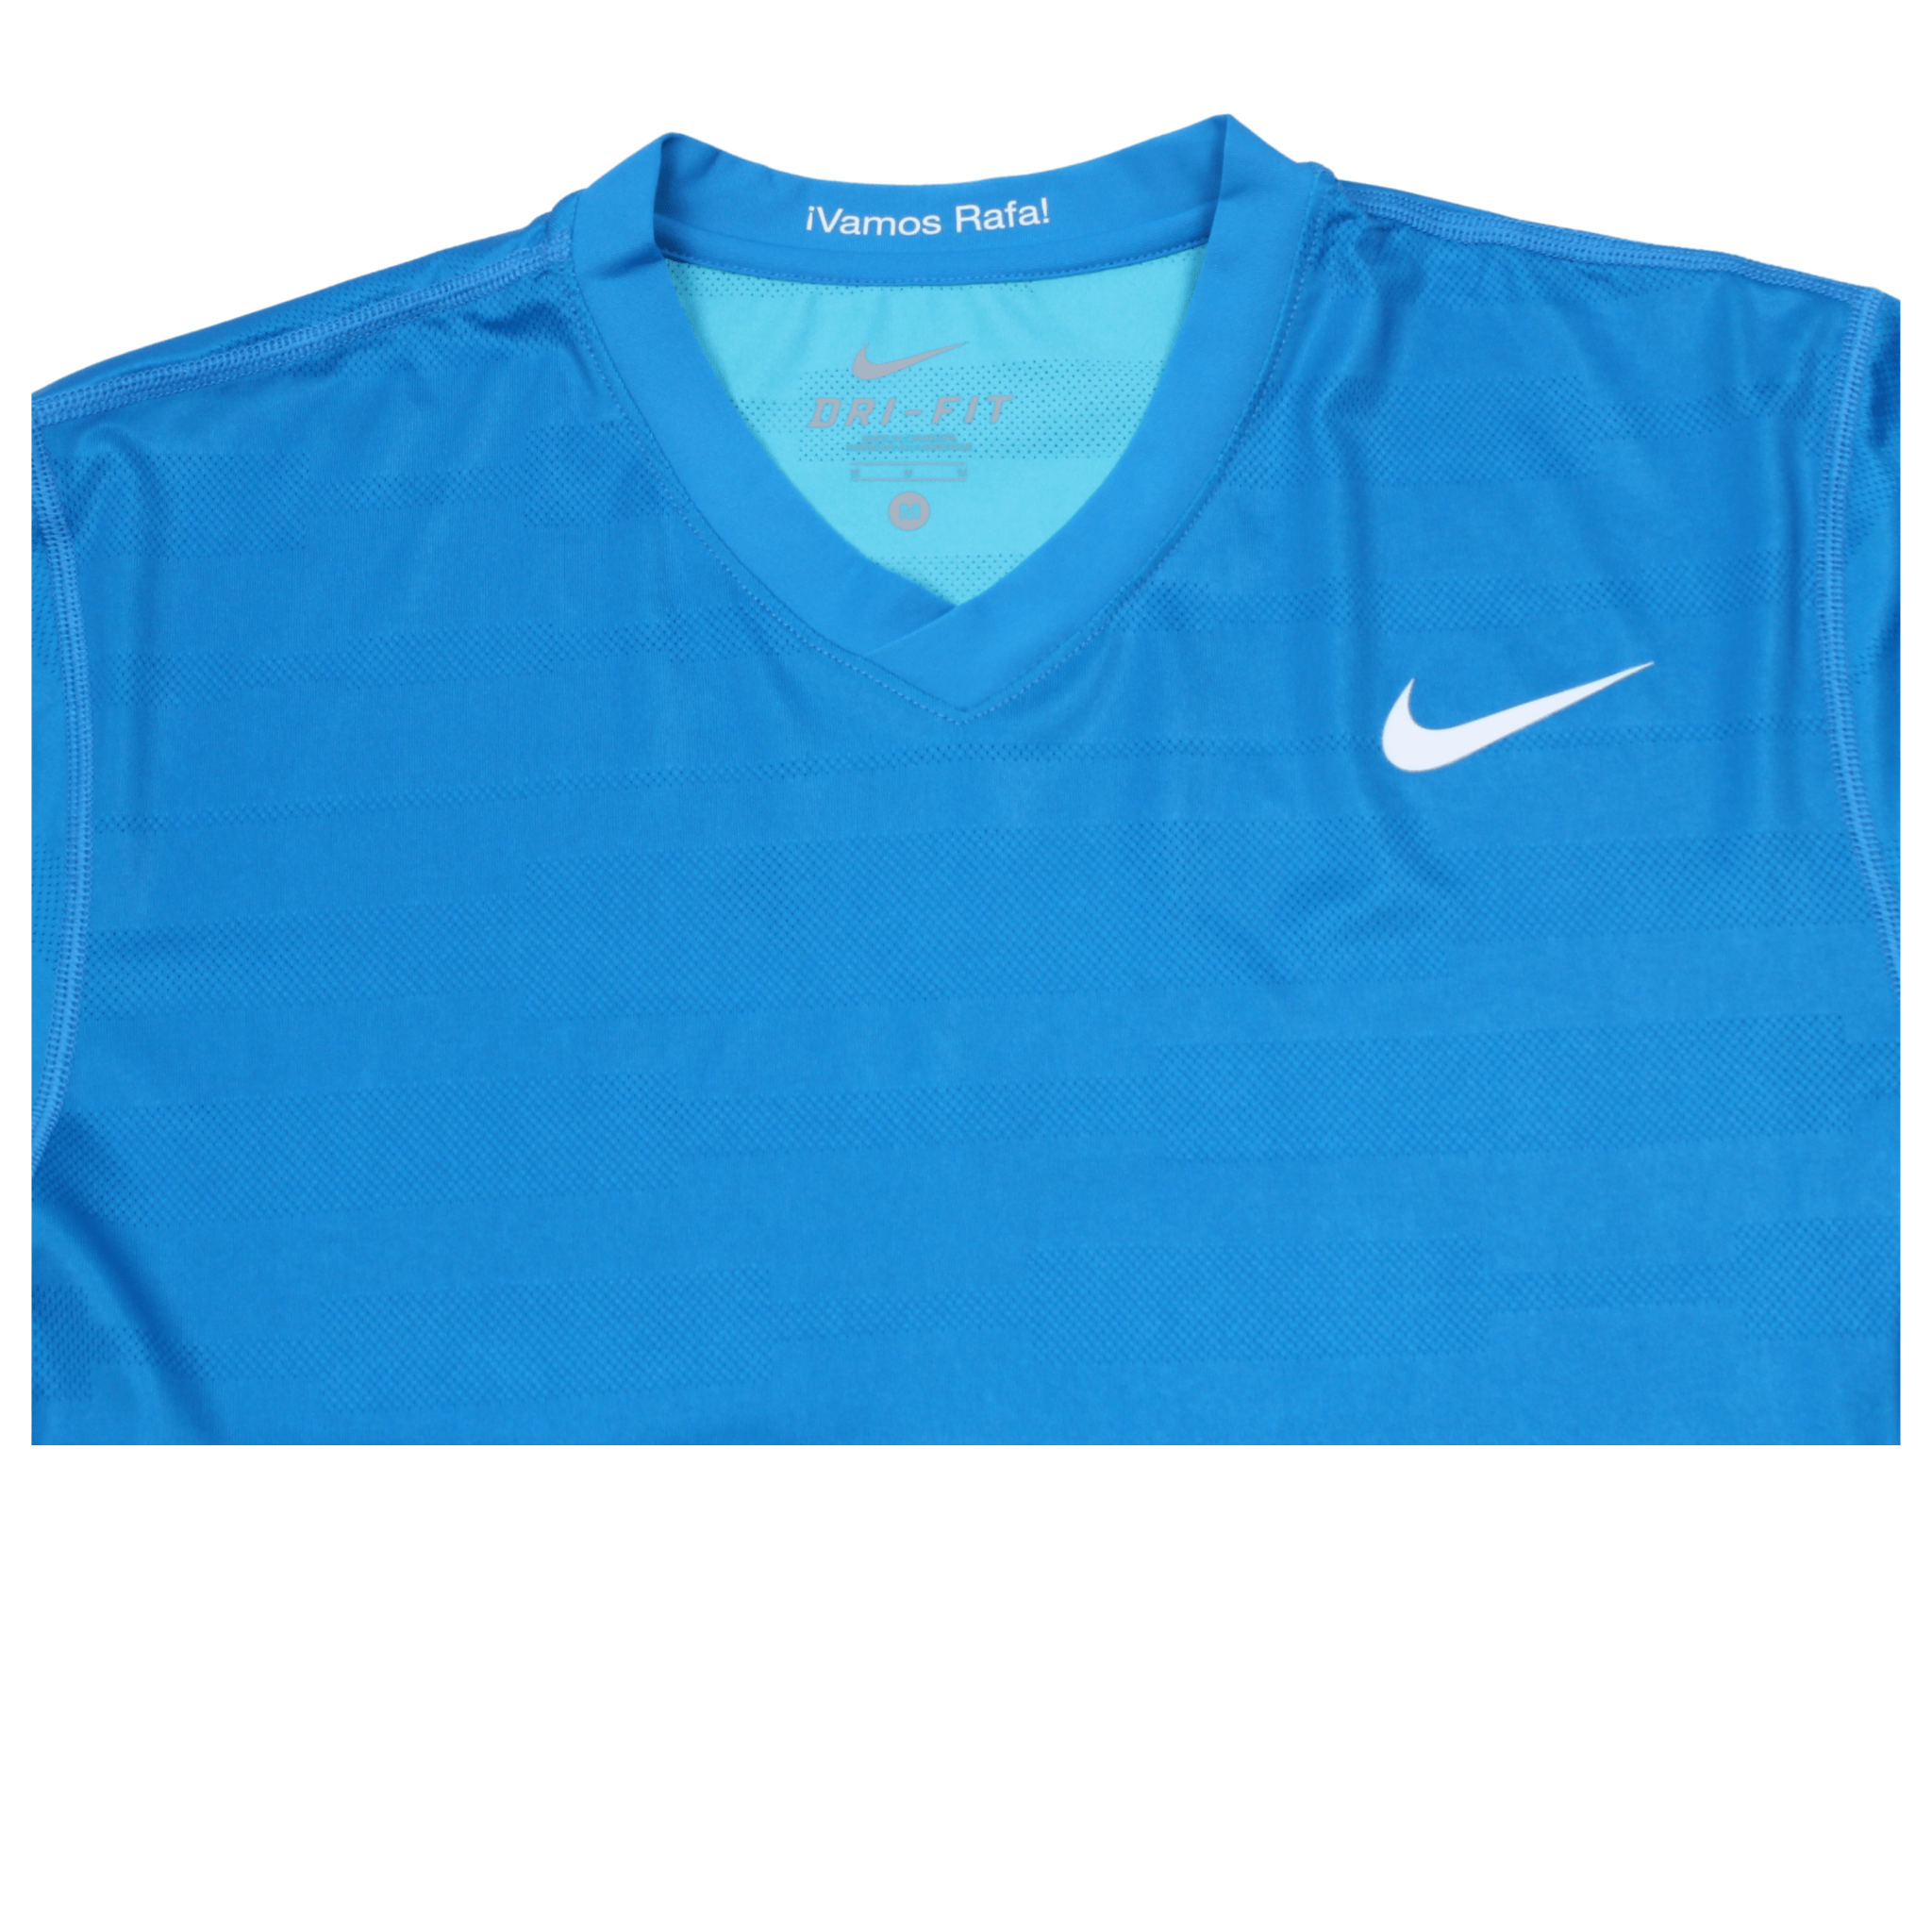 Nike Rafael Nadal T Shirt (M) BNWT